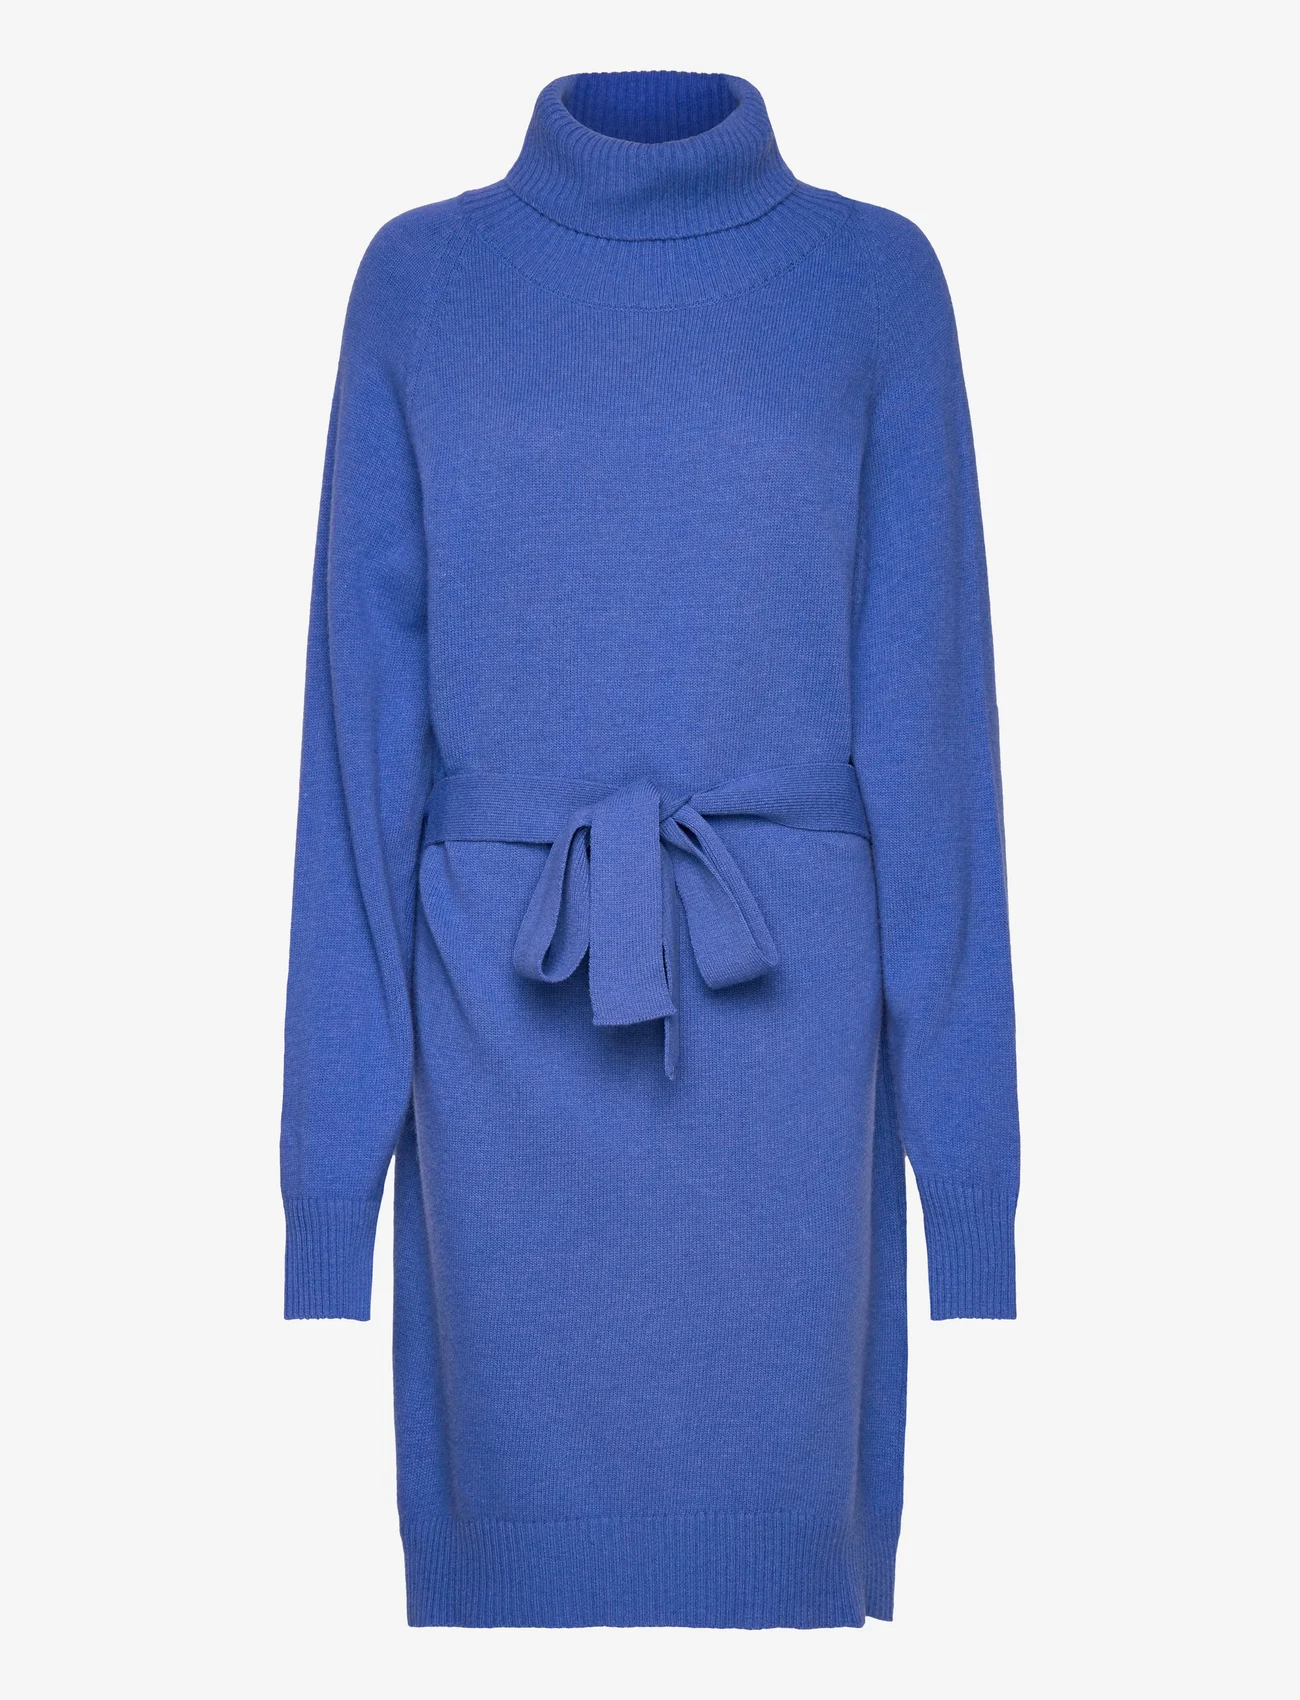 IVY OAK - Mini Knit Dress - gebreide jurken - light cobalt blue - 0